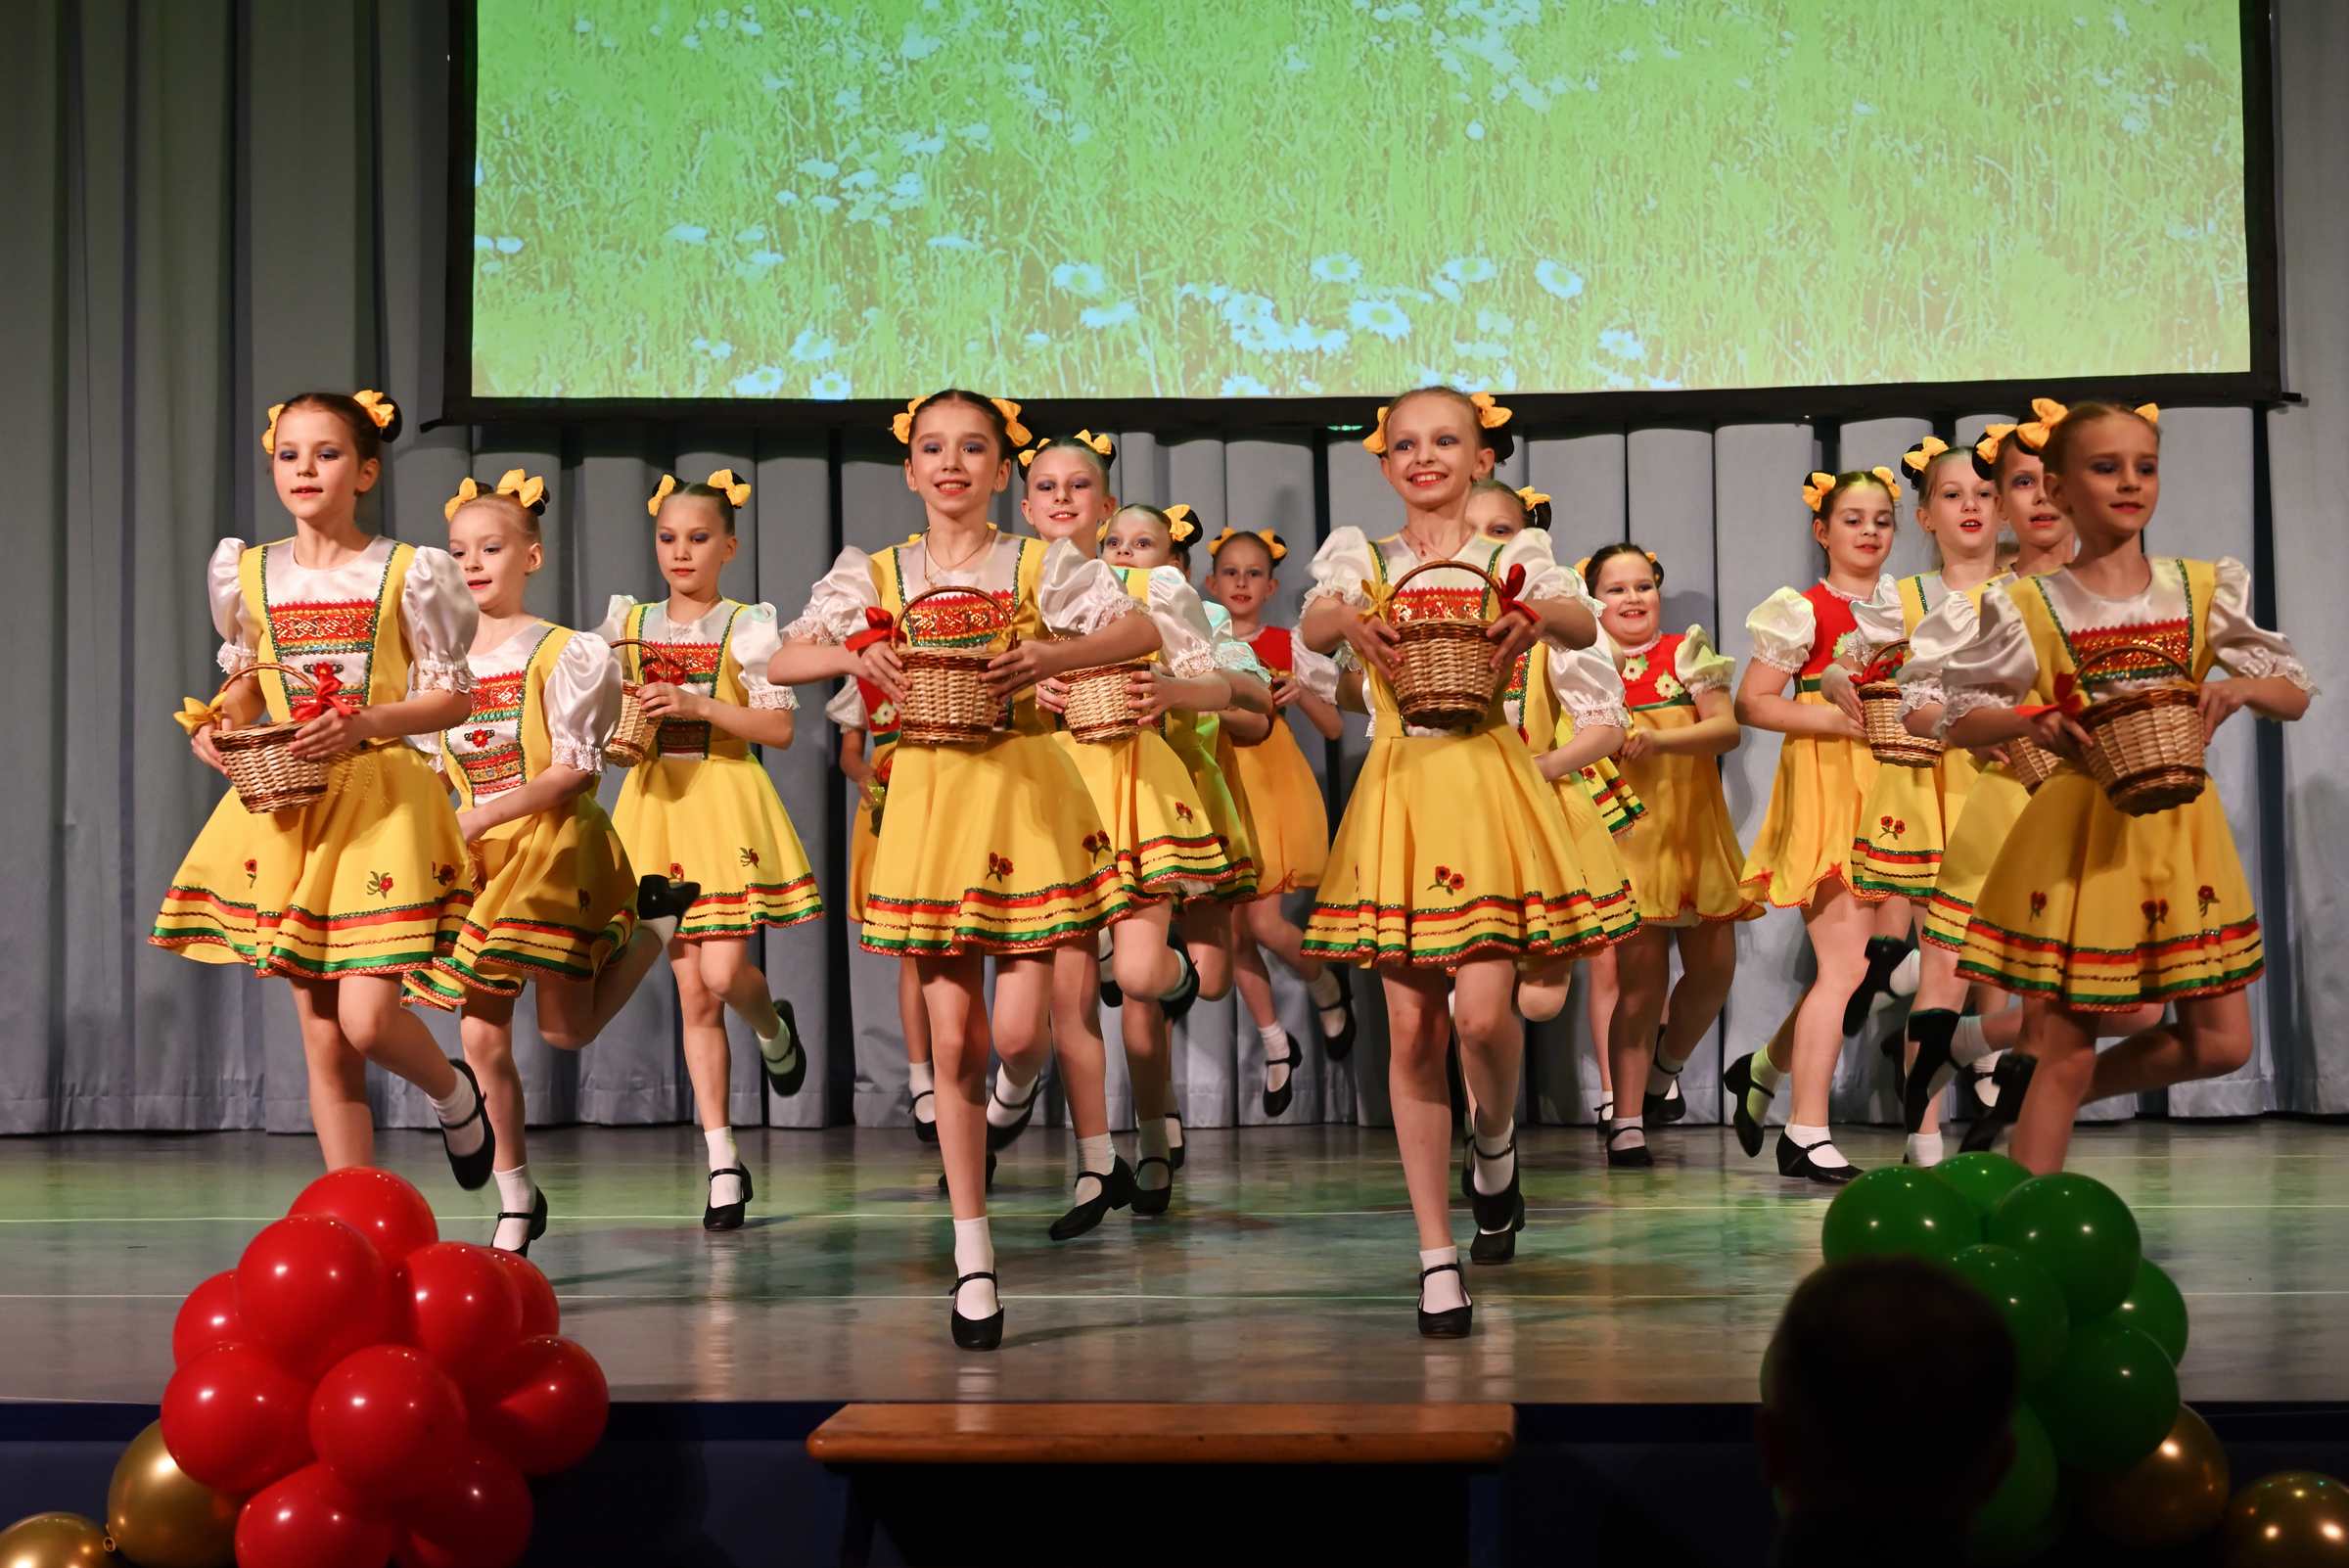 Отчётный концерт детского хореографического коллектива Солнцецвет. Грибочки-ягодки.